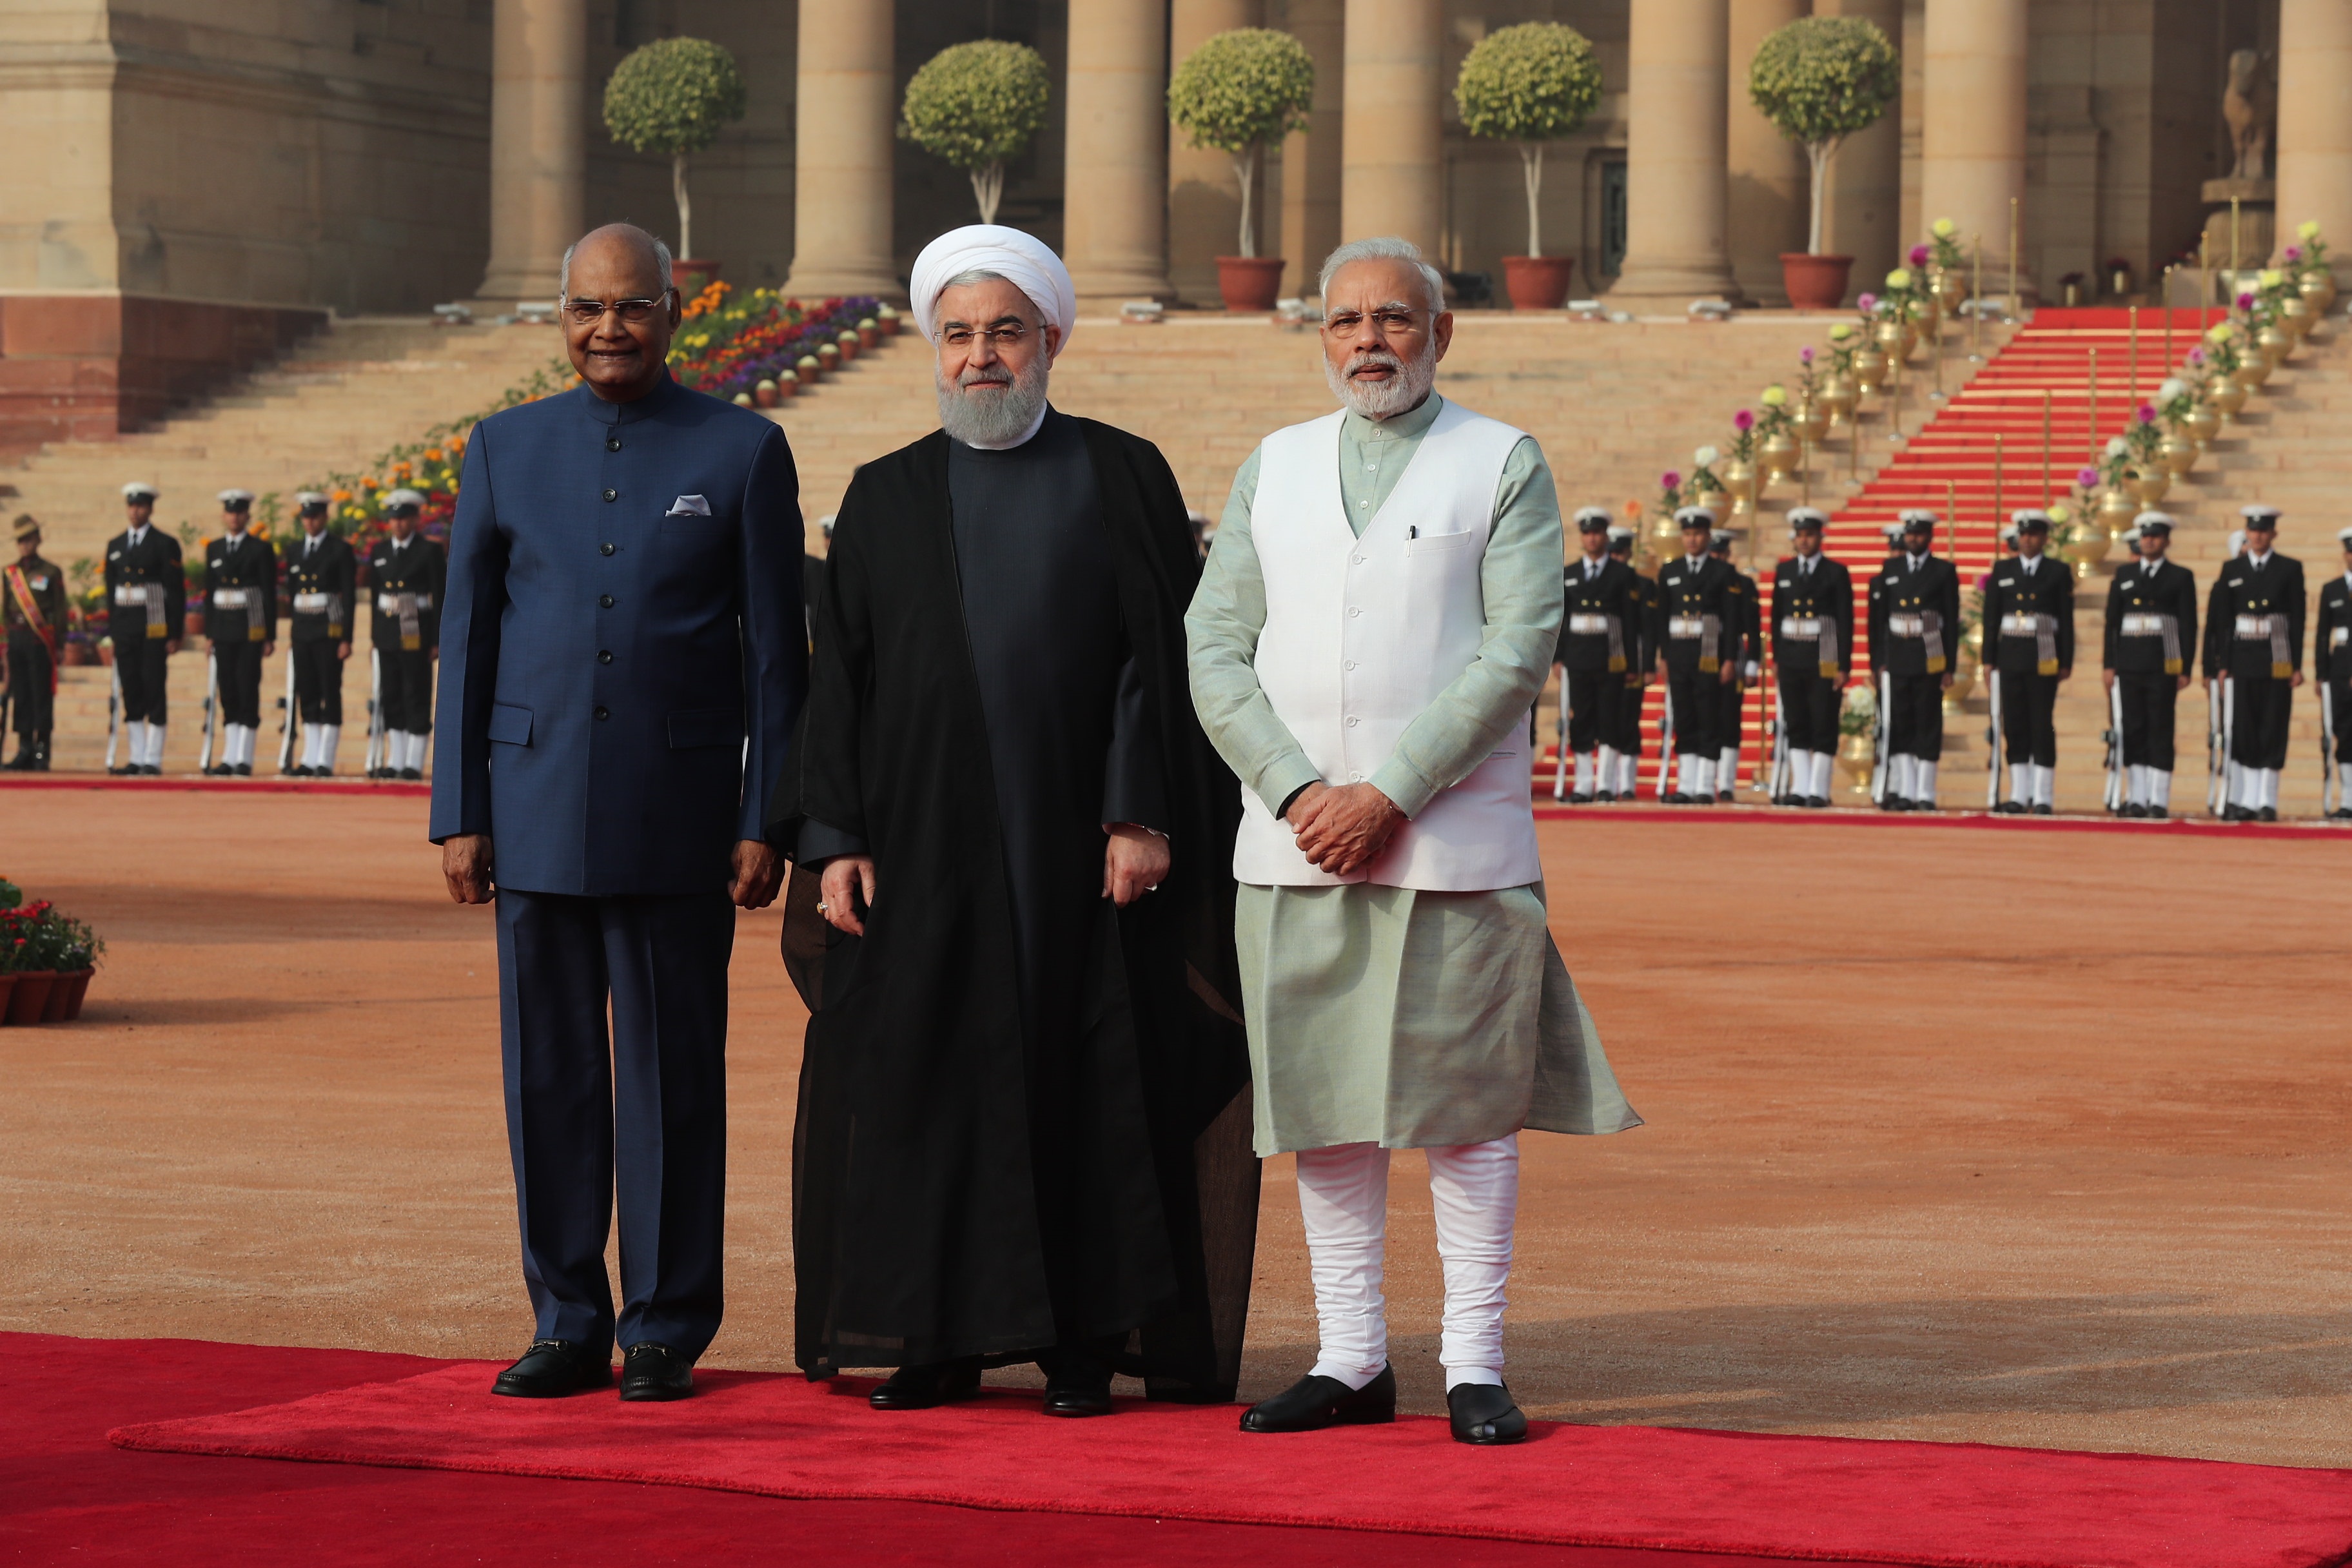 عکس | استقبال رسمی از روحانی در کاخ ریاست جمهوری هند با شلیک ۲۱ گلوله توپ/ ادای احترام به گاندی